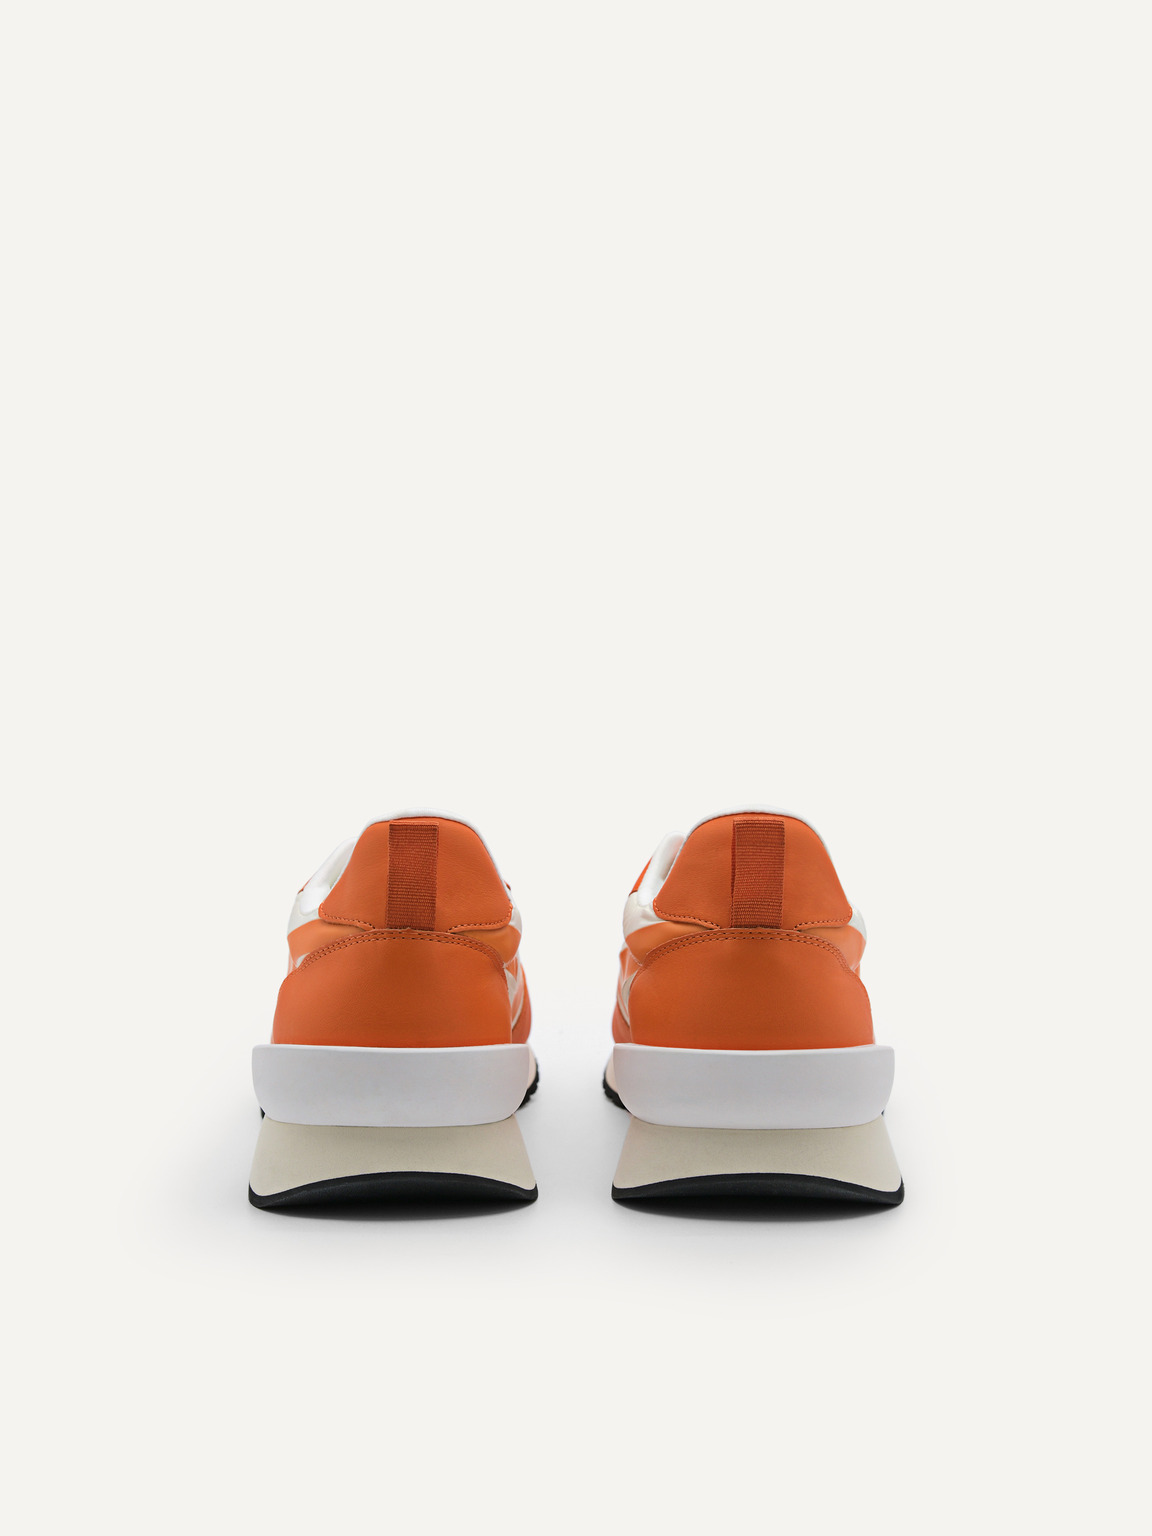 皮革翼尖牛津鞋, 橙色